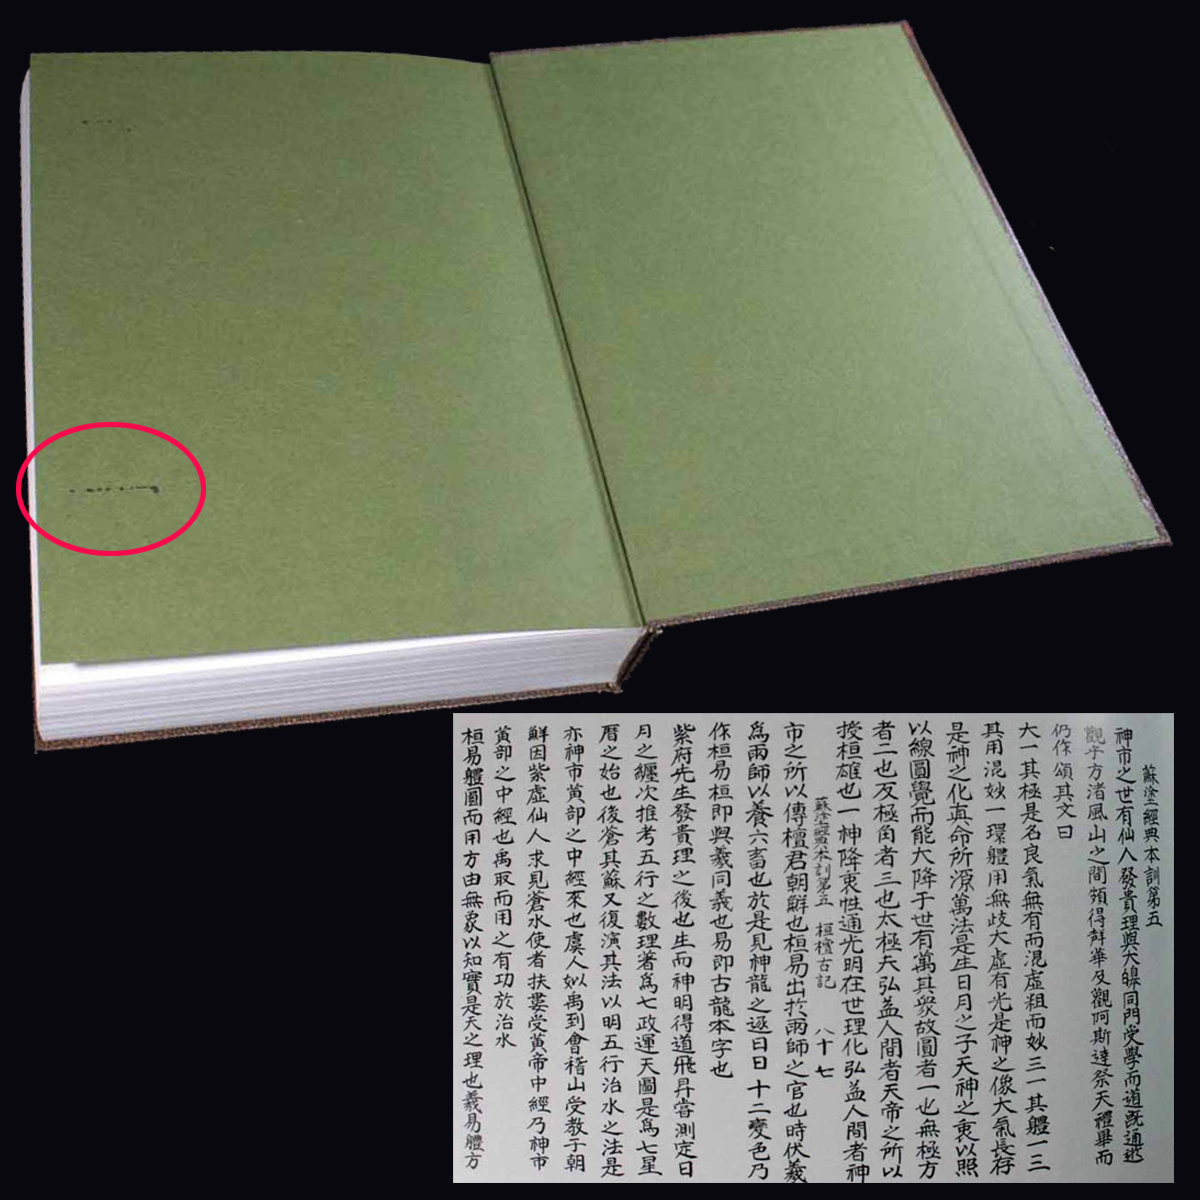 大韓民族史 桓檀古記(かんだんこき) 日本書紀は謀略偽書である 三国遺事三国史記も信用できない 三聖紀全 檀君世紀 北夫餘紀 太白逸史_黒いシミが、見返し遊び紙にあります